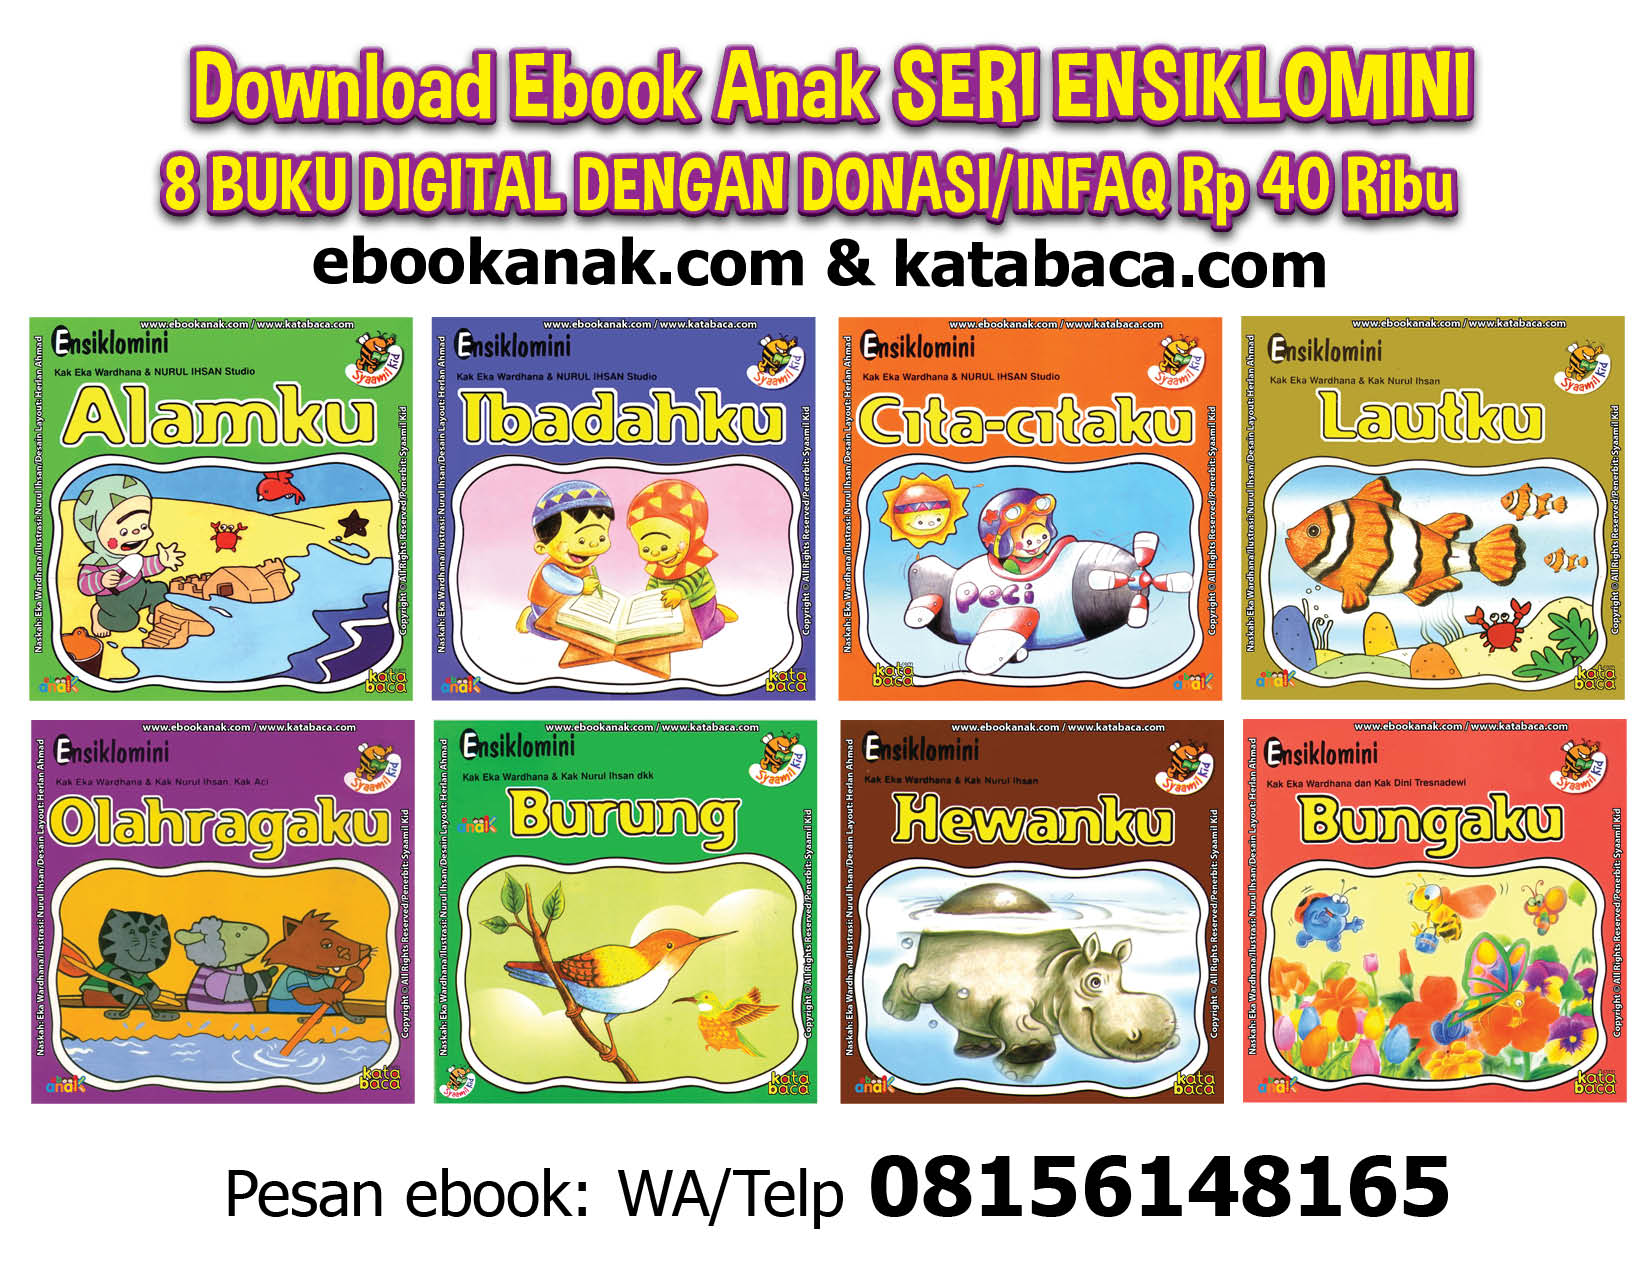 download 8 ebook seri ensiklomini